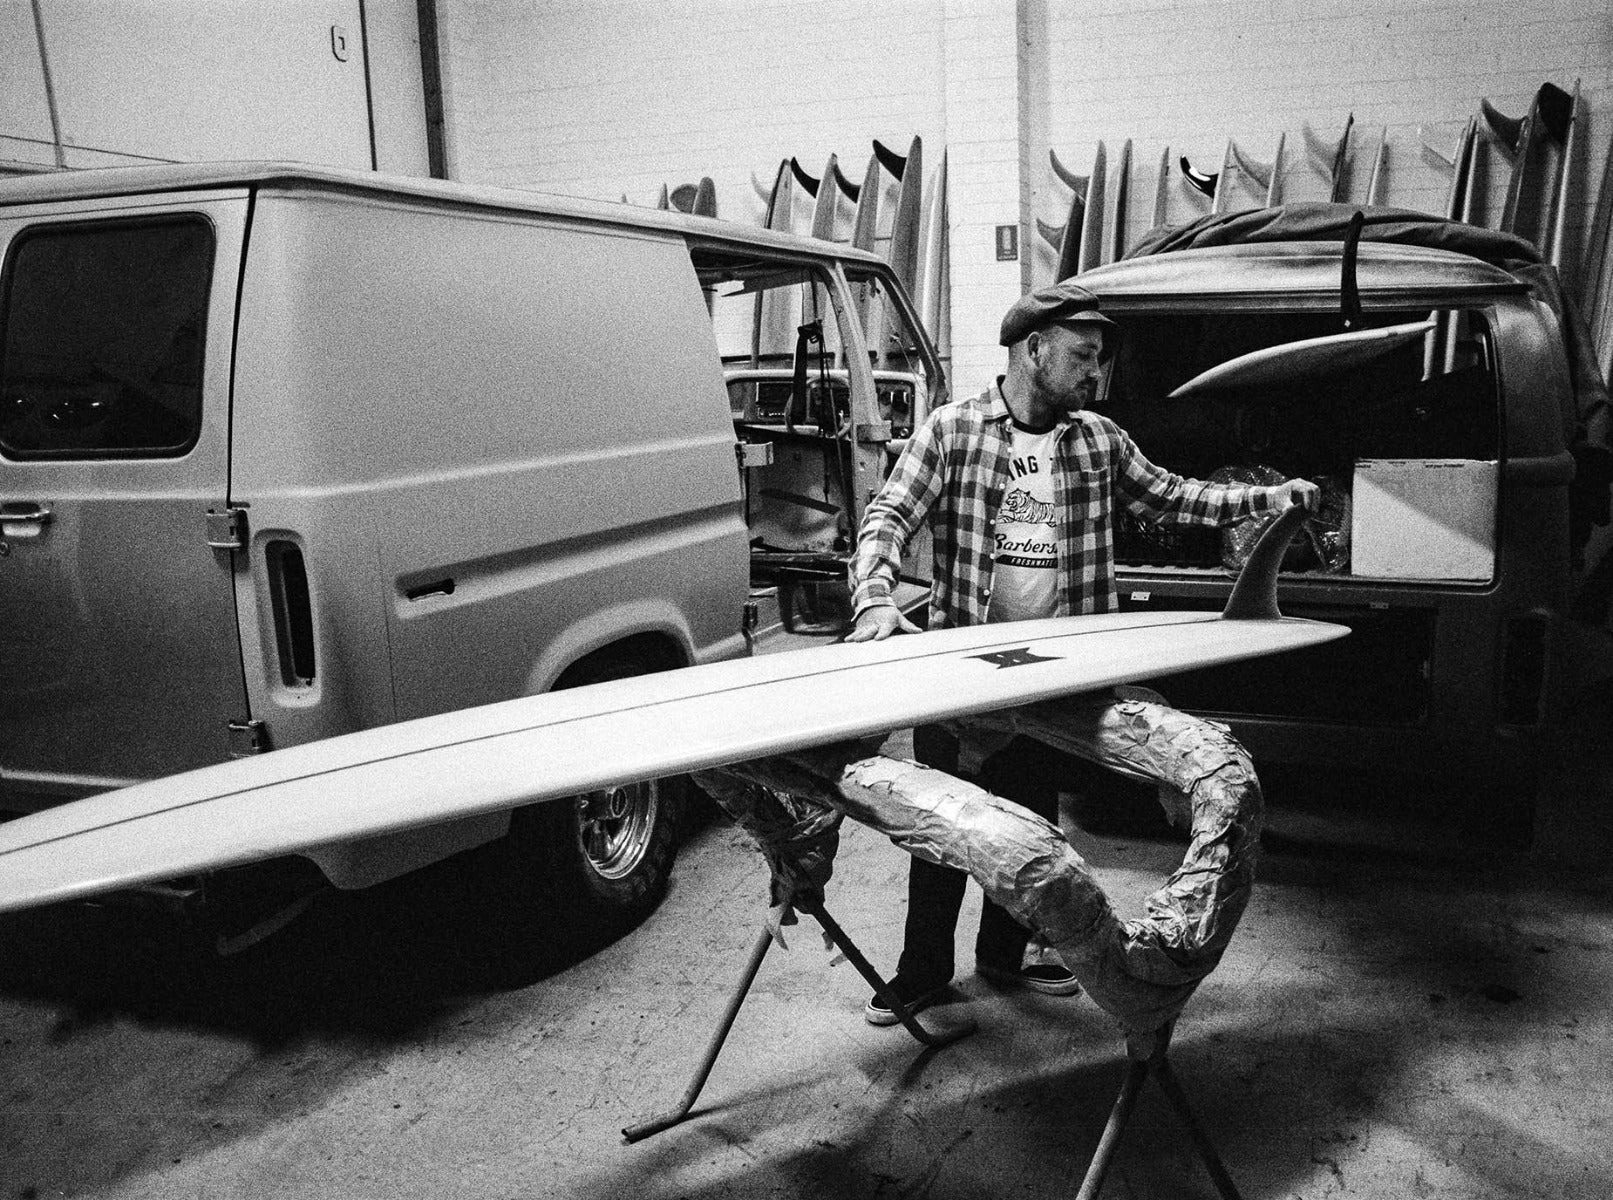 Man waxing surfboard in front of Van